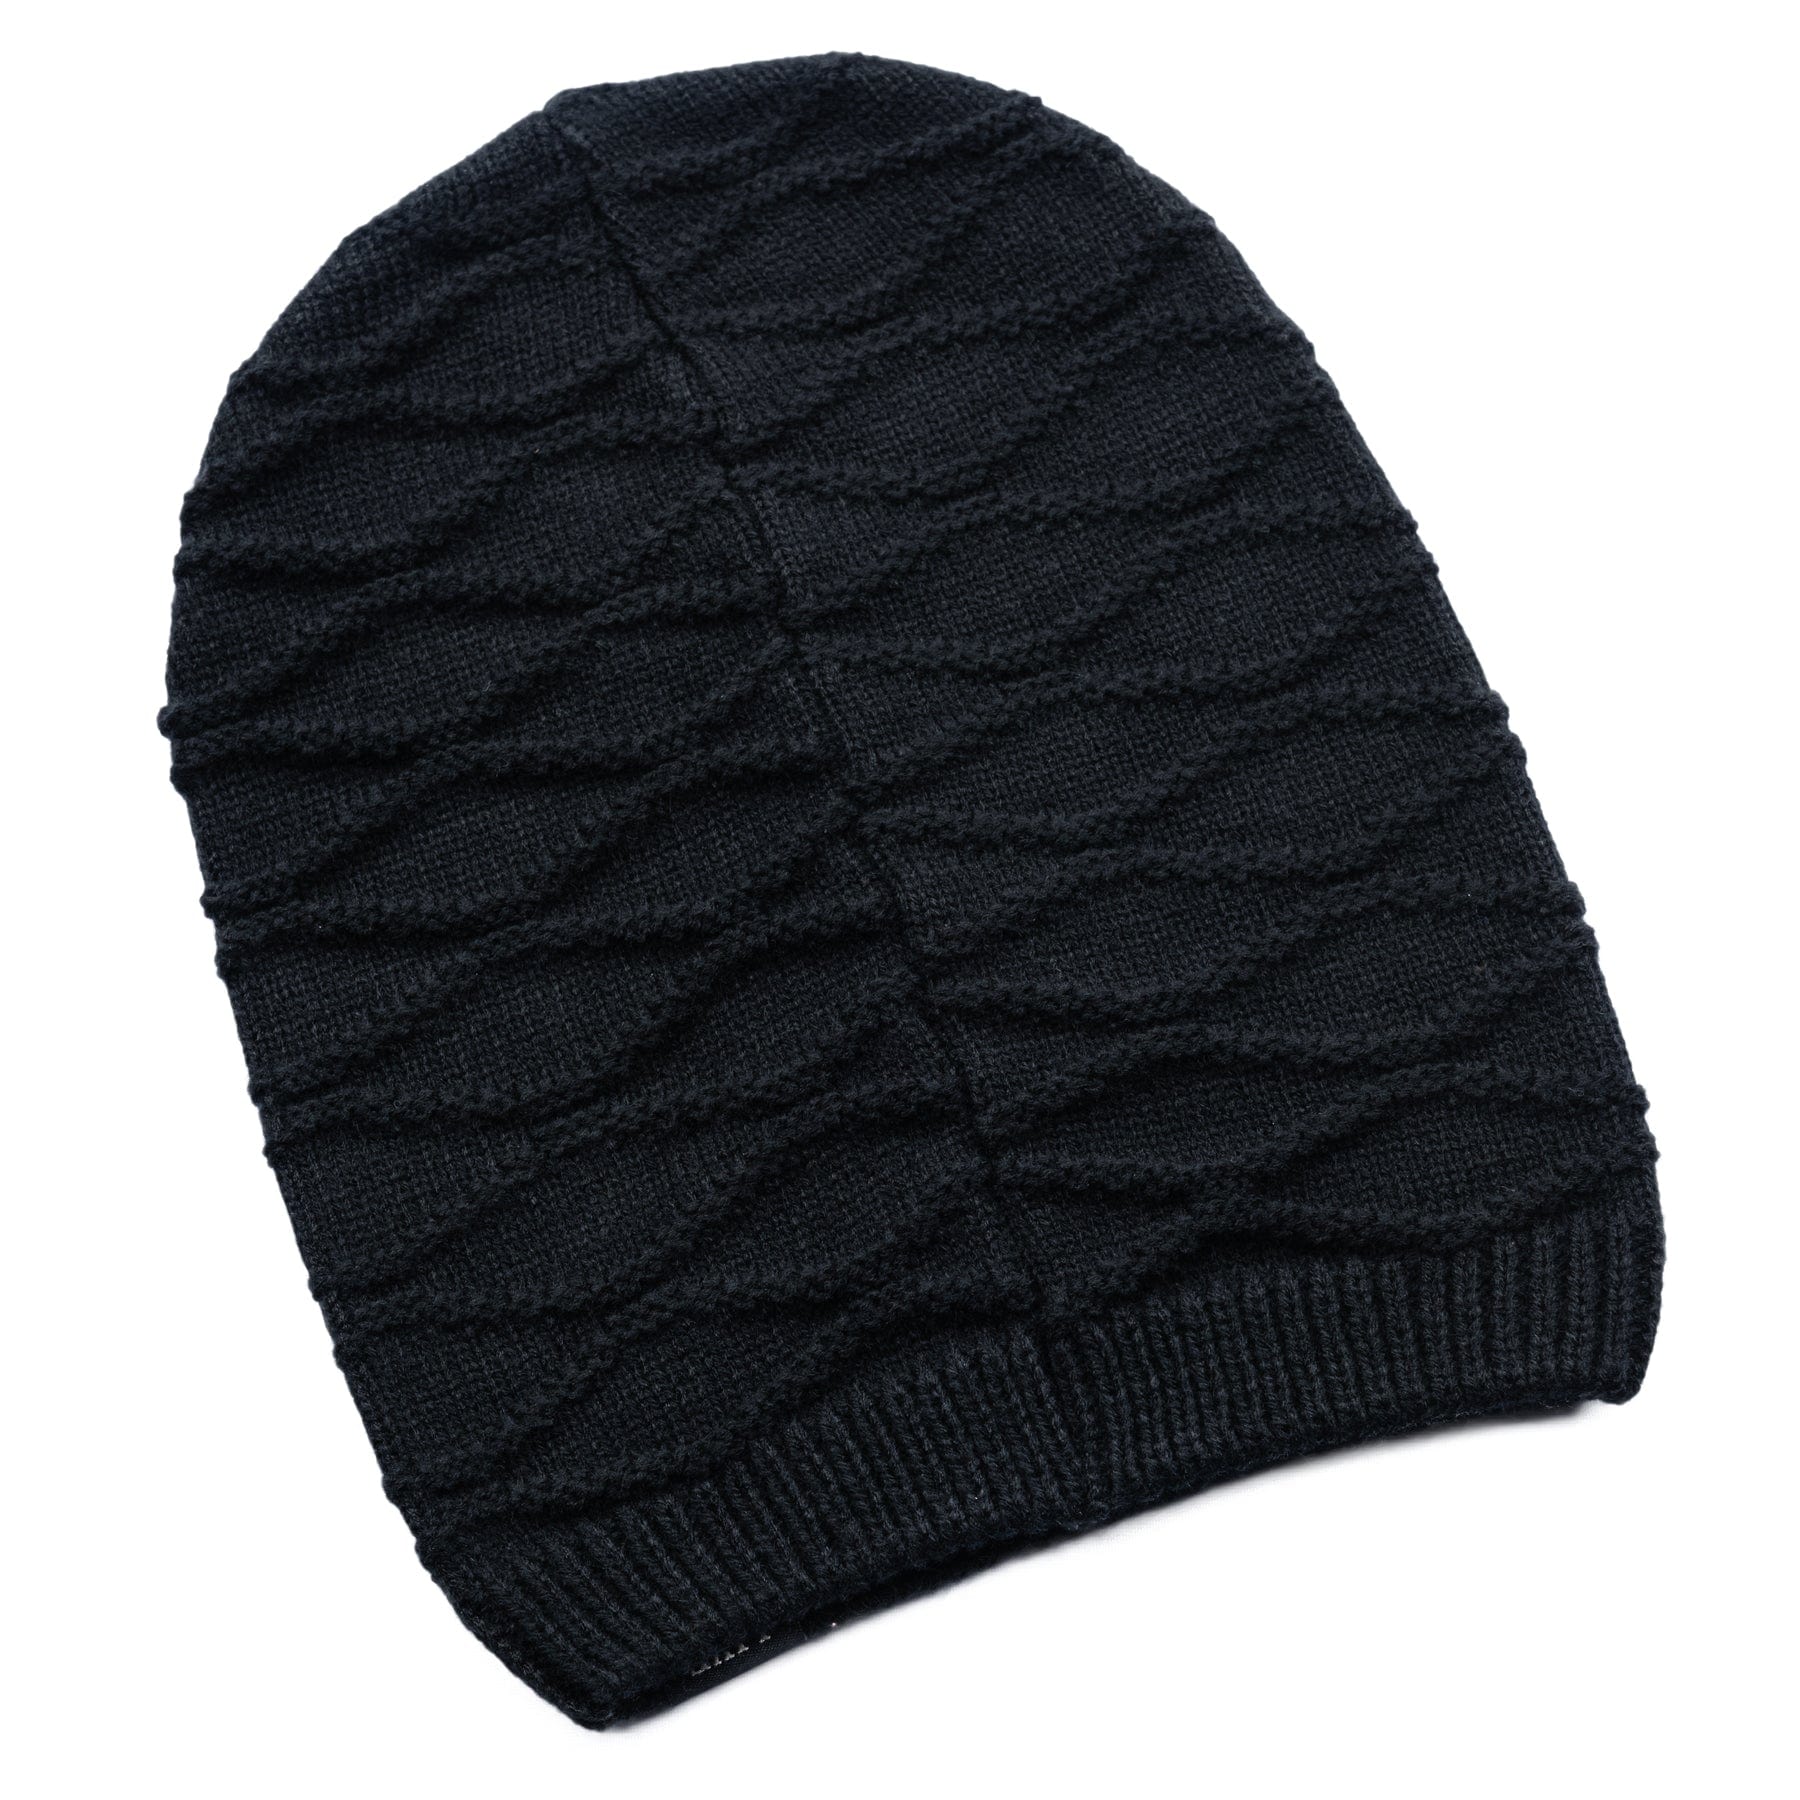 Wornstar Clothing Hat Modulator Beanie - Black